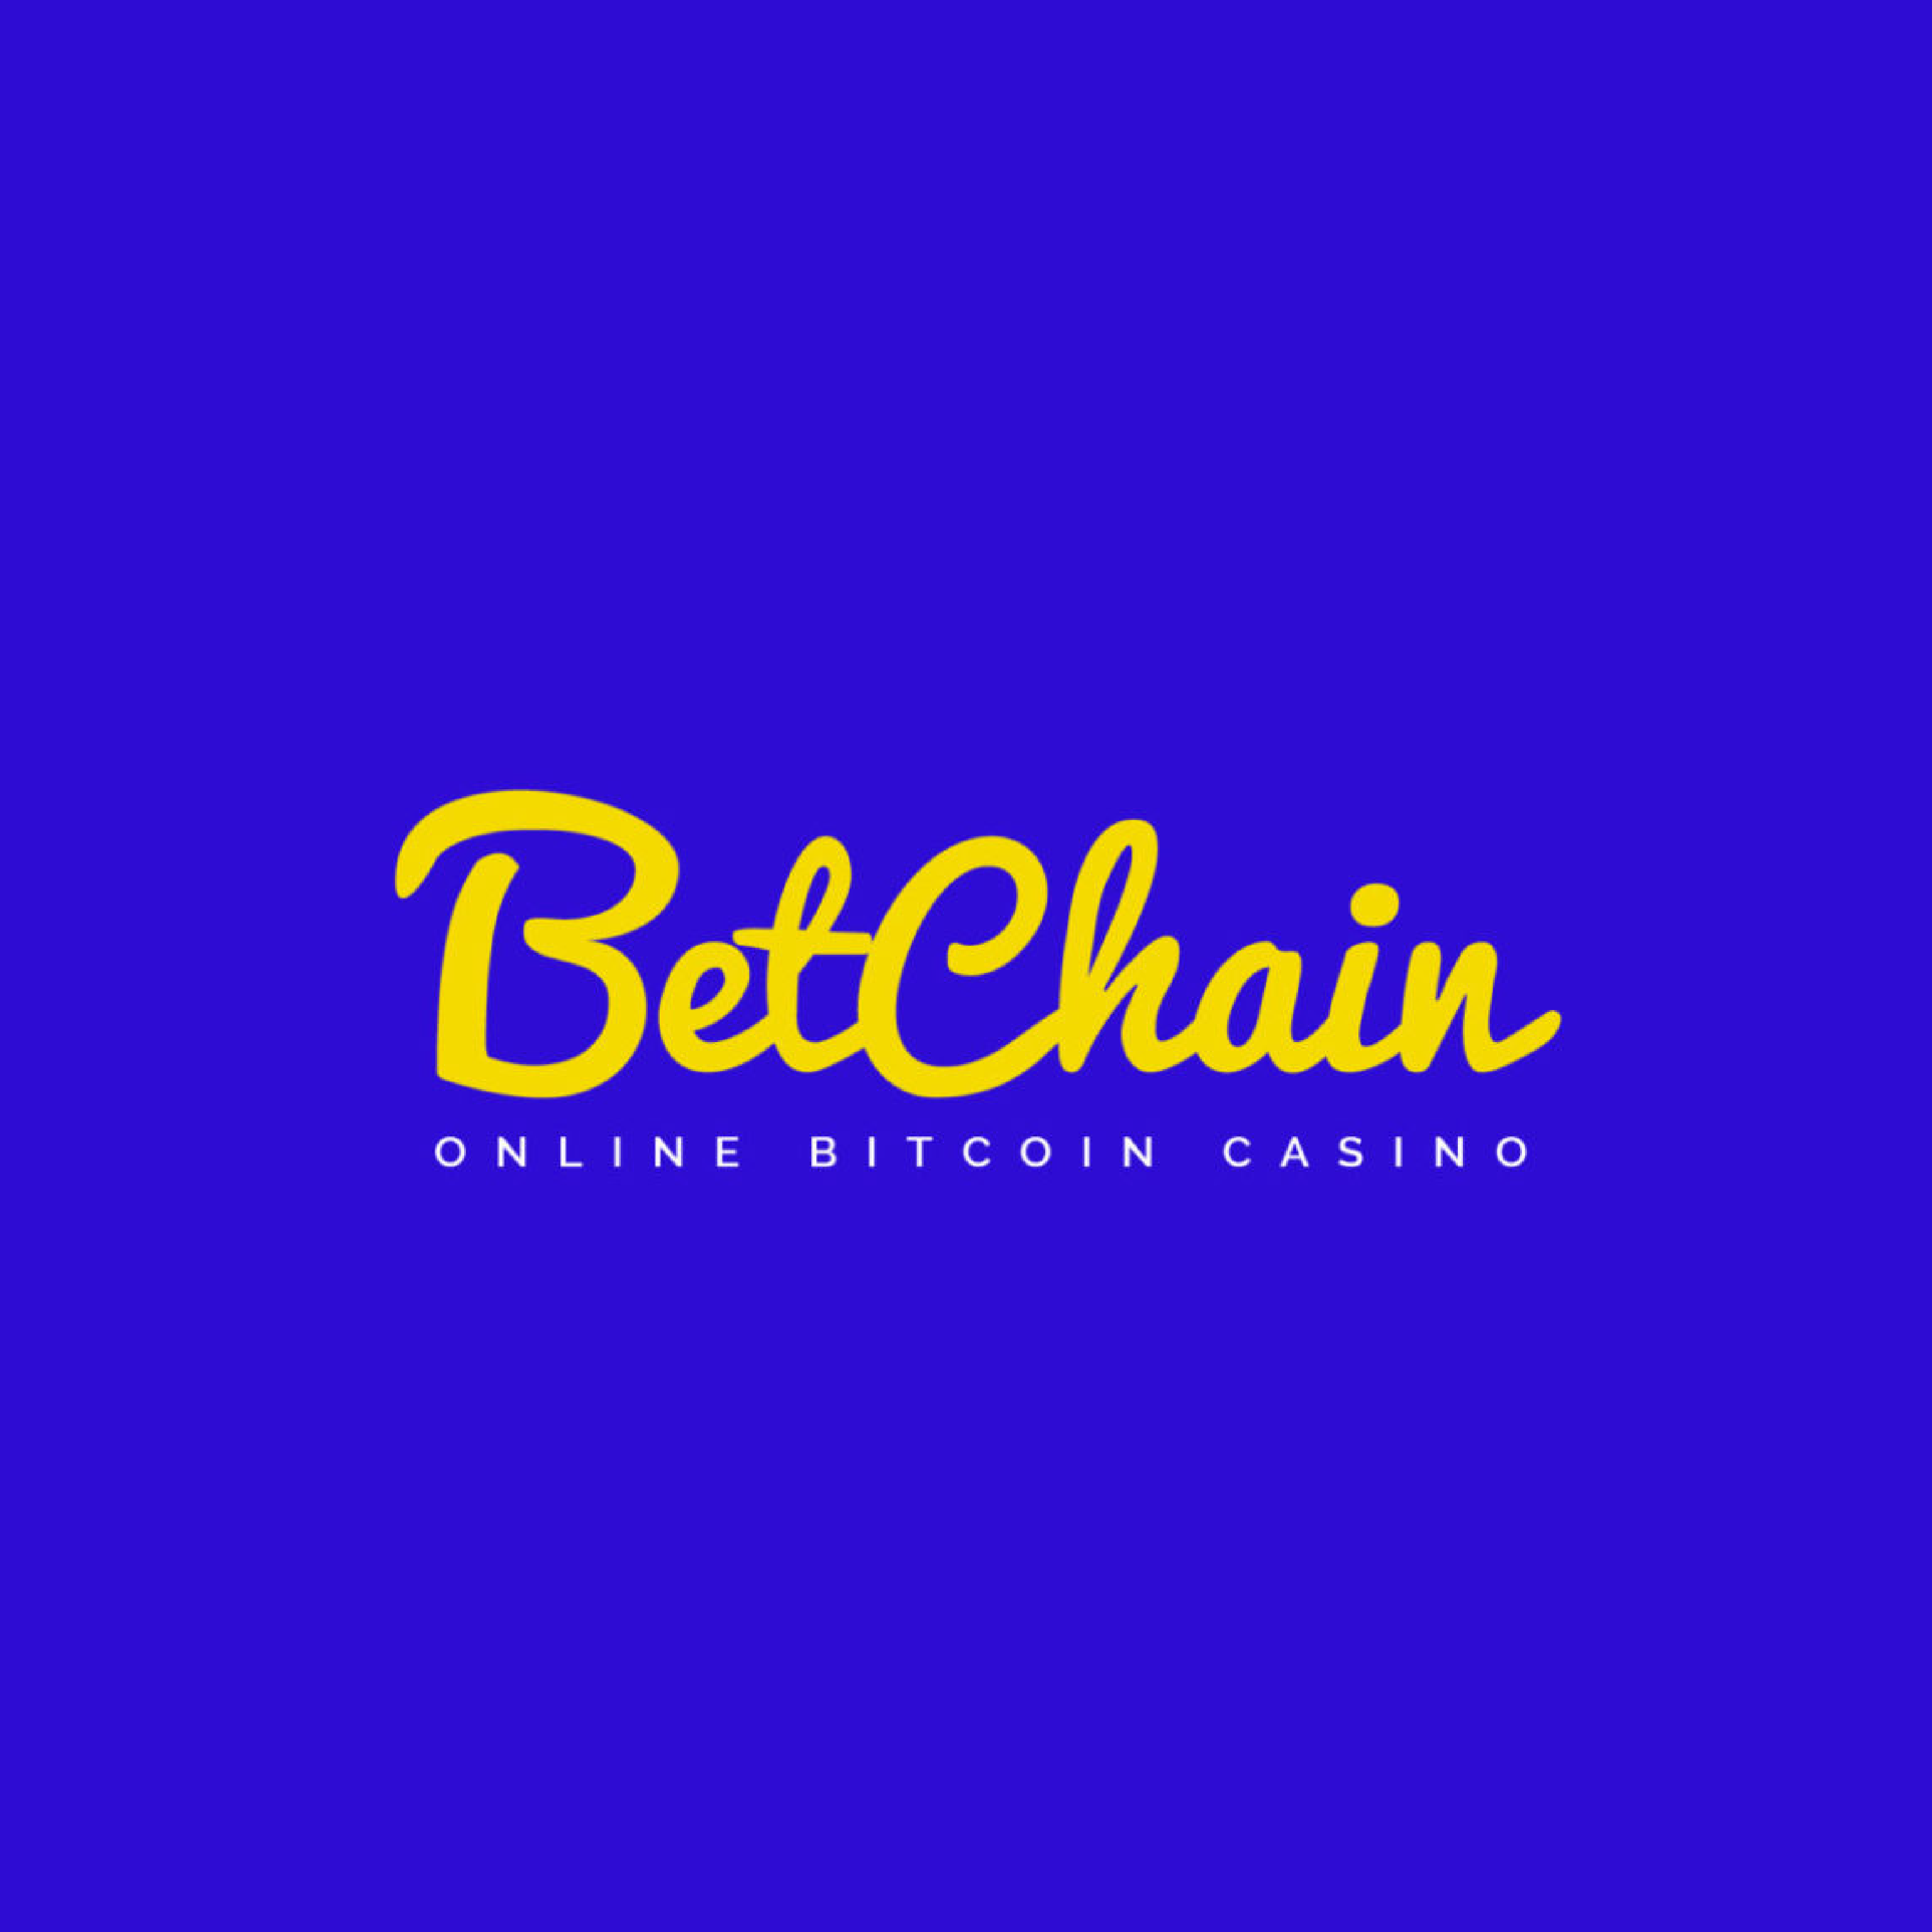 No deposit bonus codes online casino